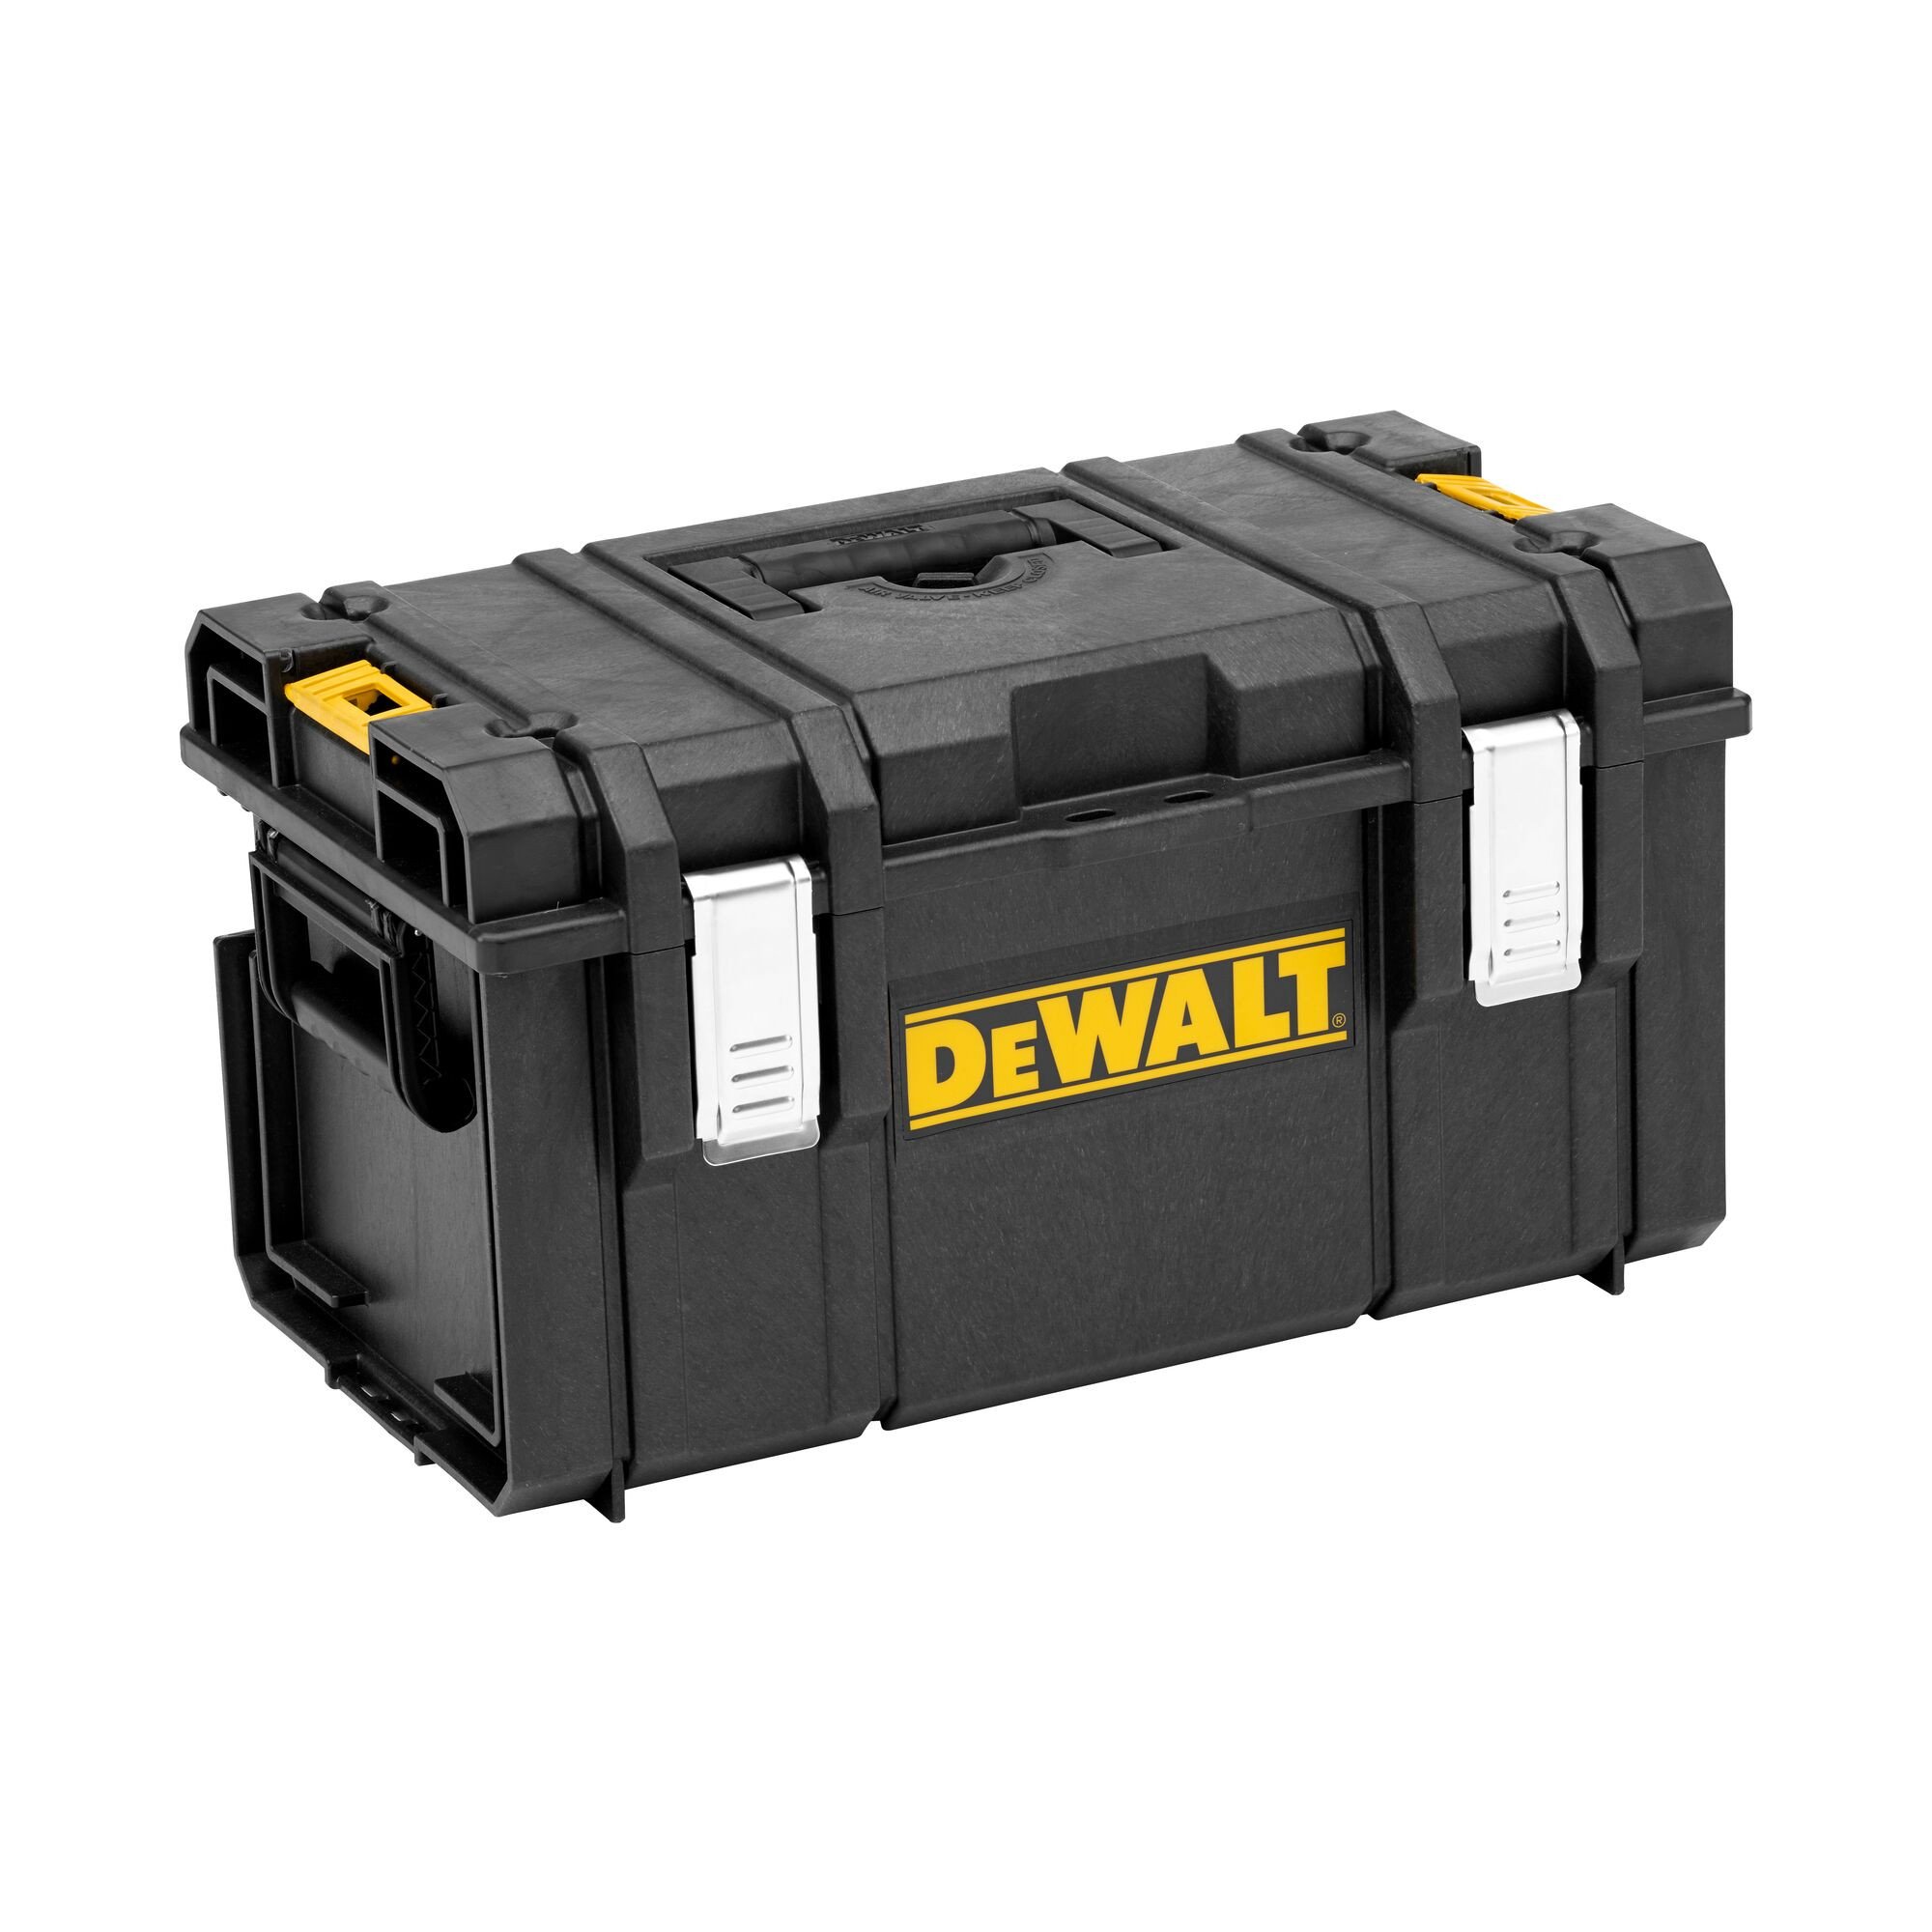 DEWALT 1-70-322 DS300 TOFFSYSTEM工具箱随身携带盒